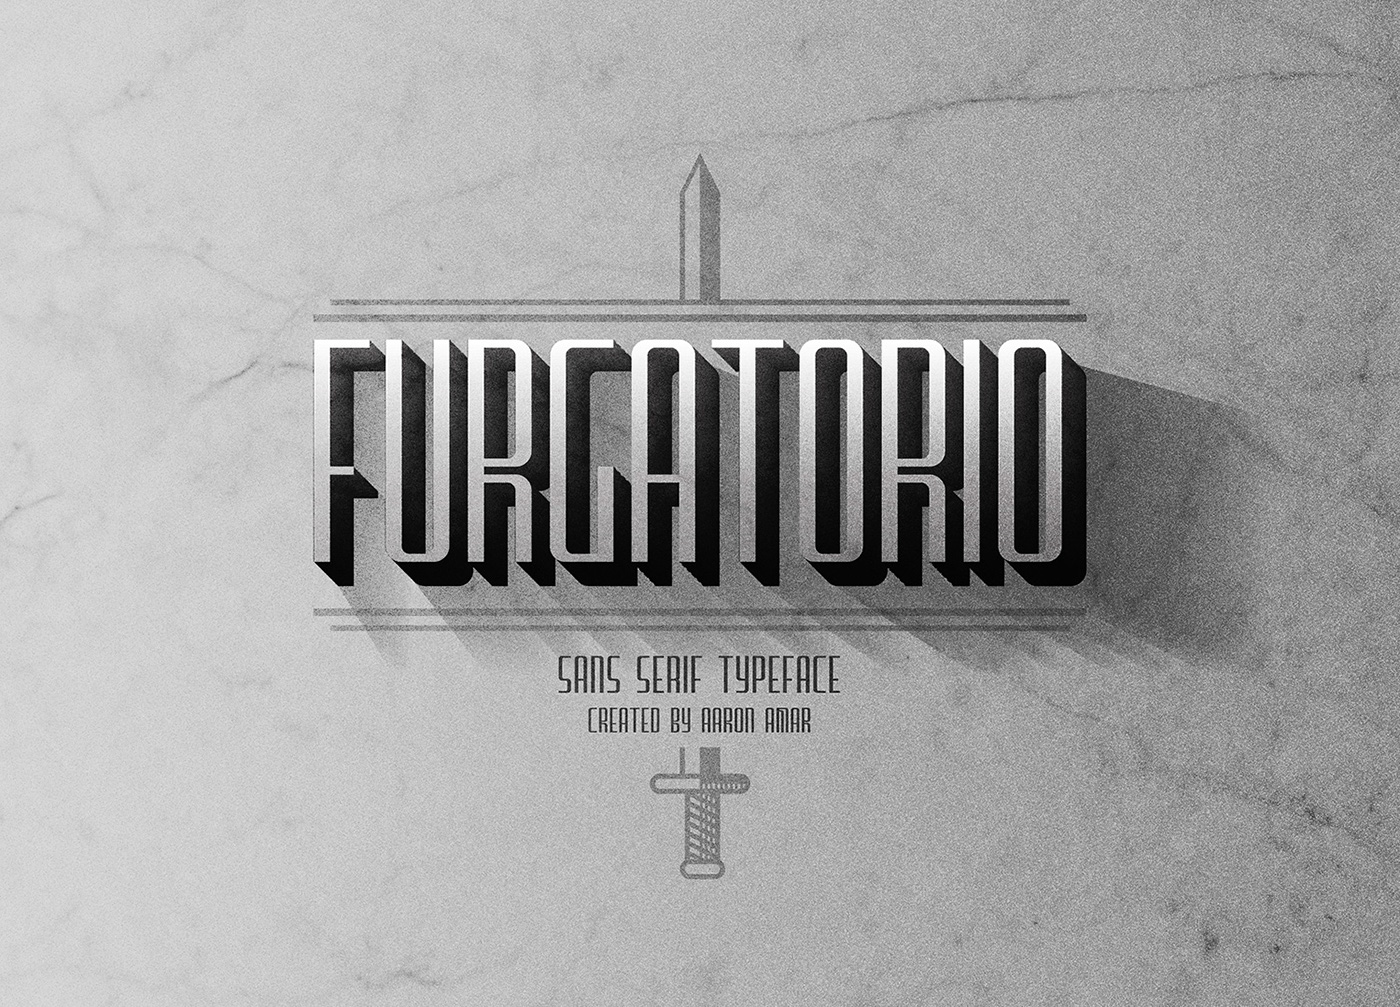 Furgatorio Sans Titling font